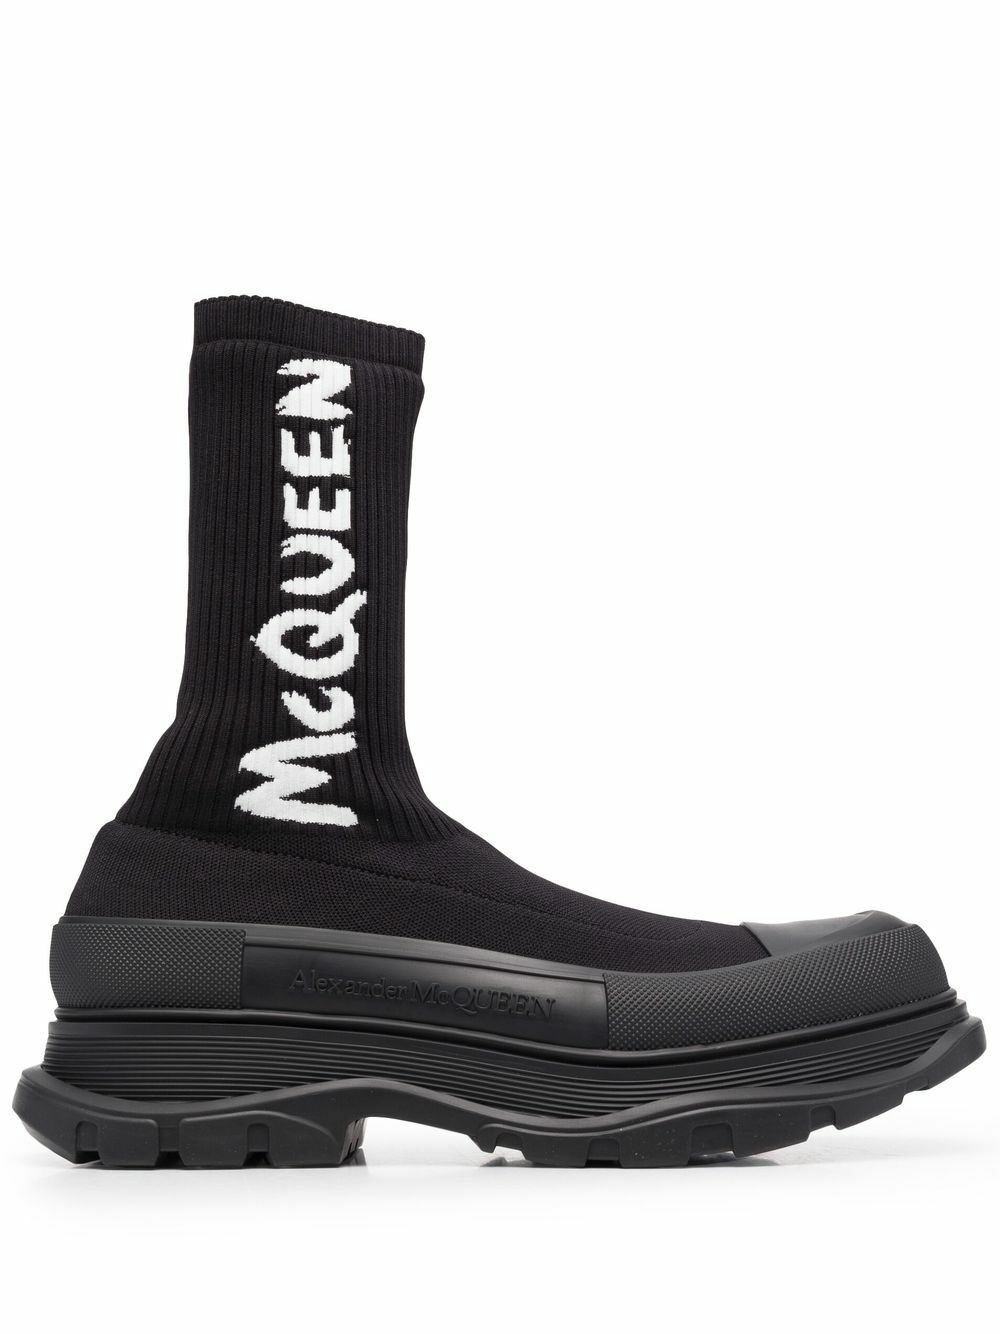 ALEXANDER MCQUEEN - Tread Slick Sneakers Alexander McQueen